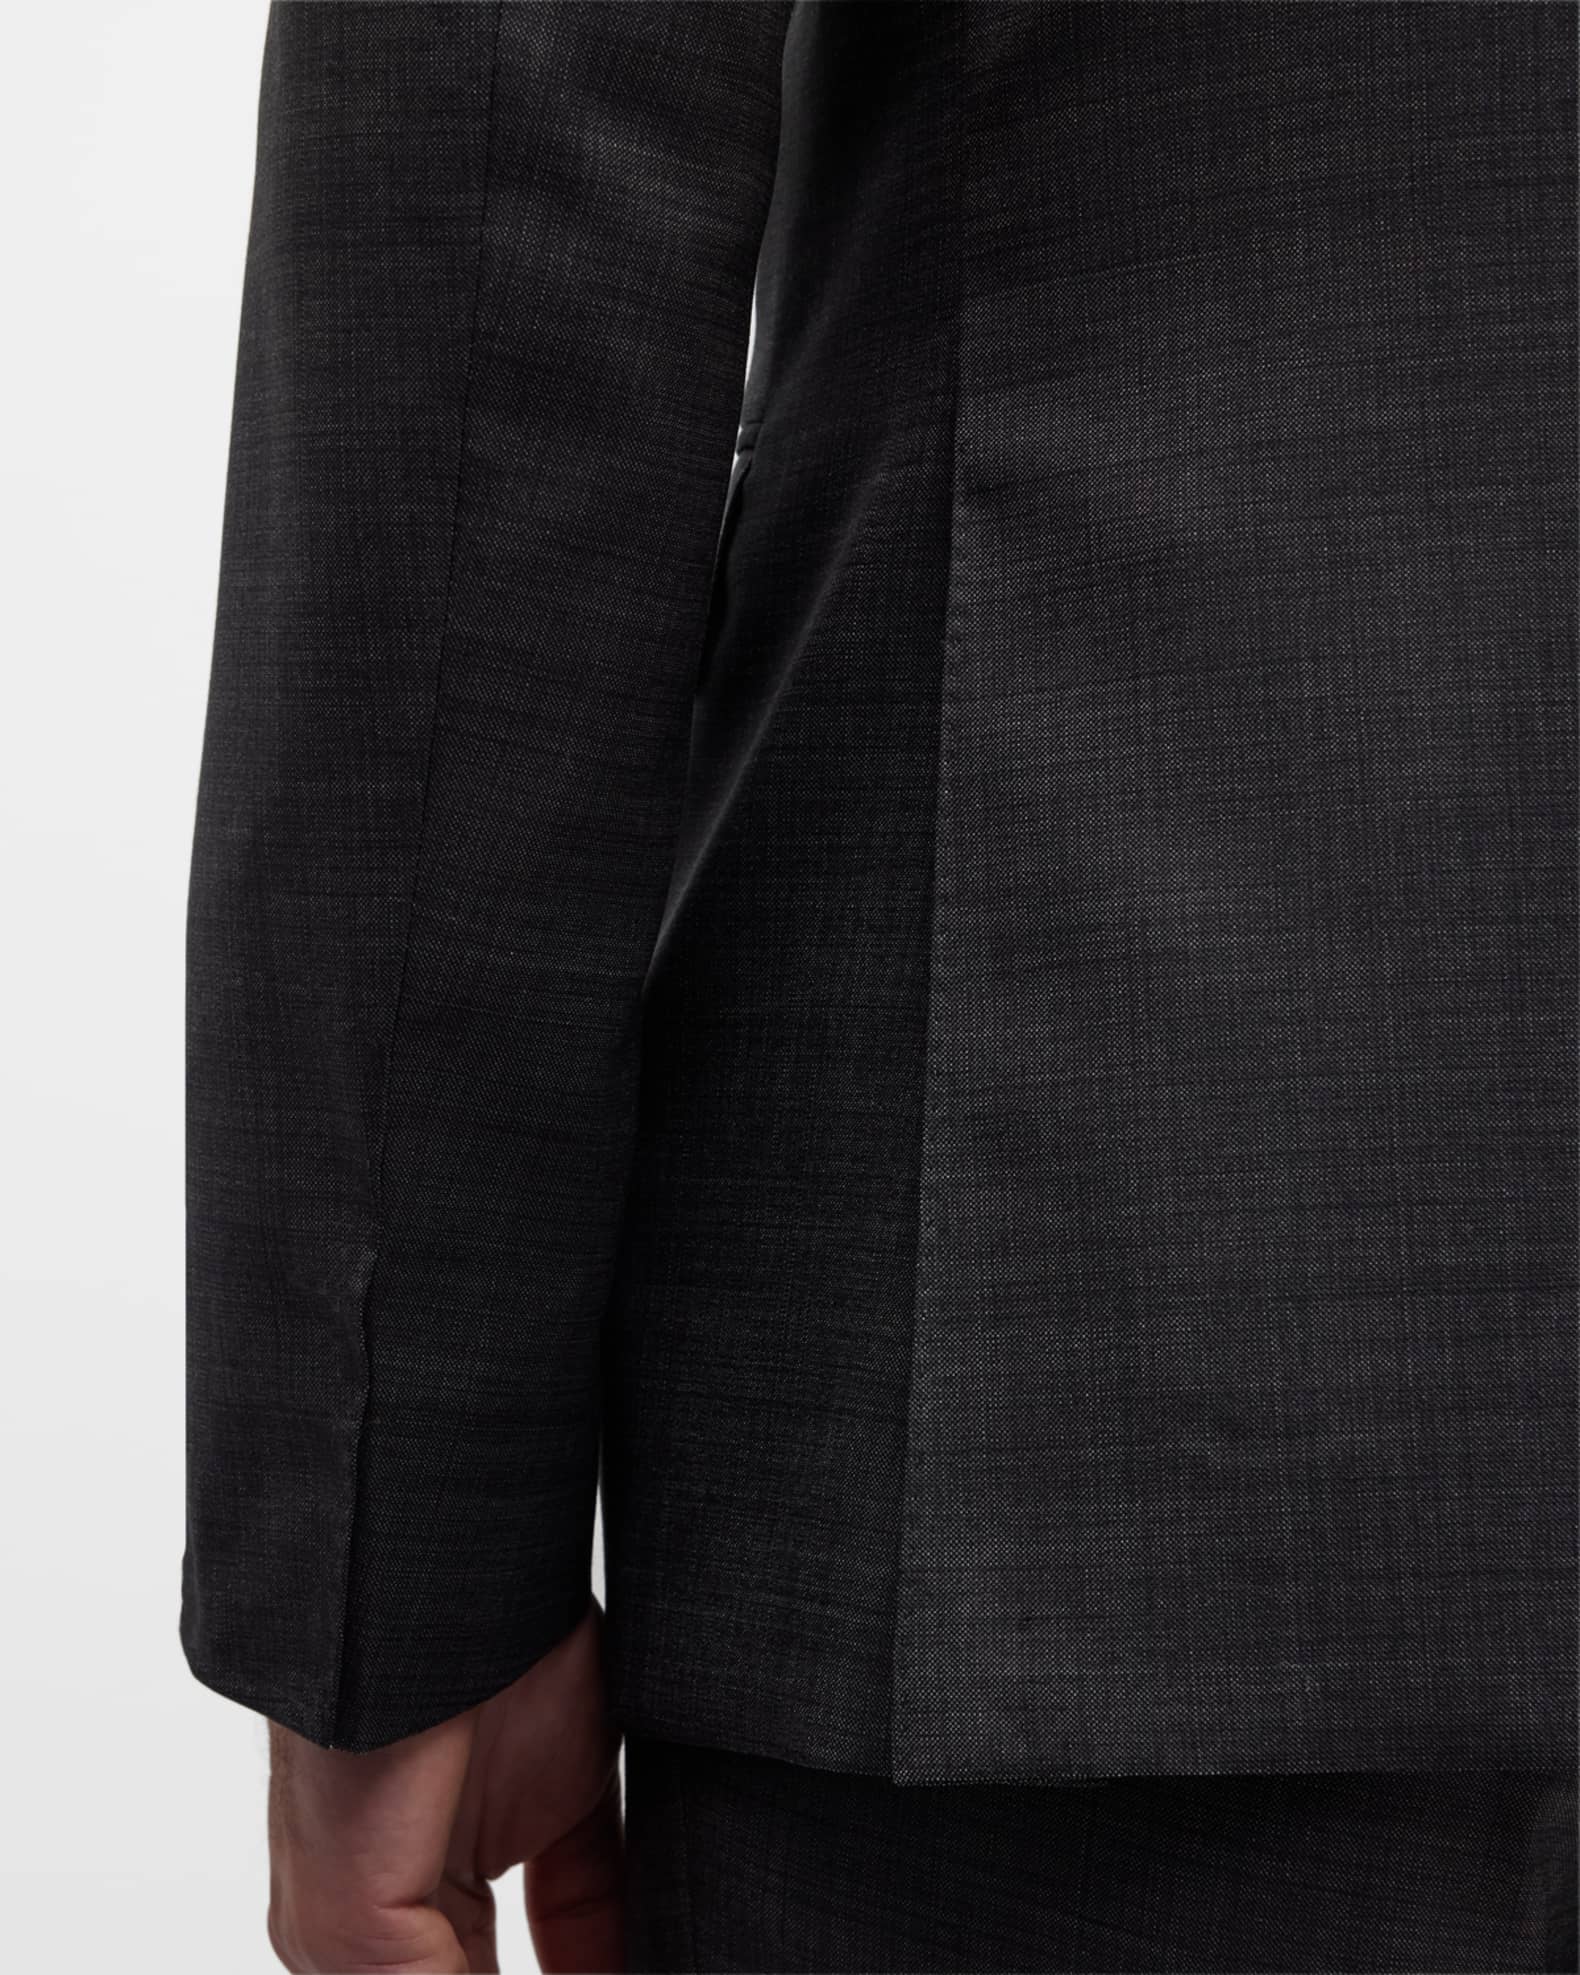 Canali Men's Solid Wool Tic Suit | Neiman Marcus